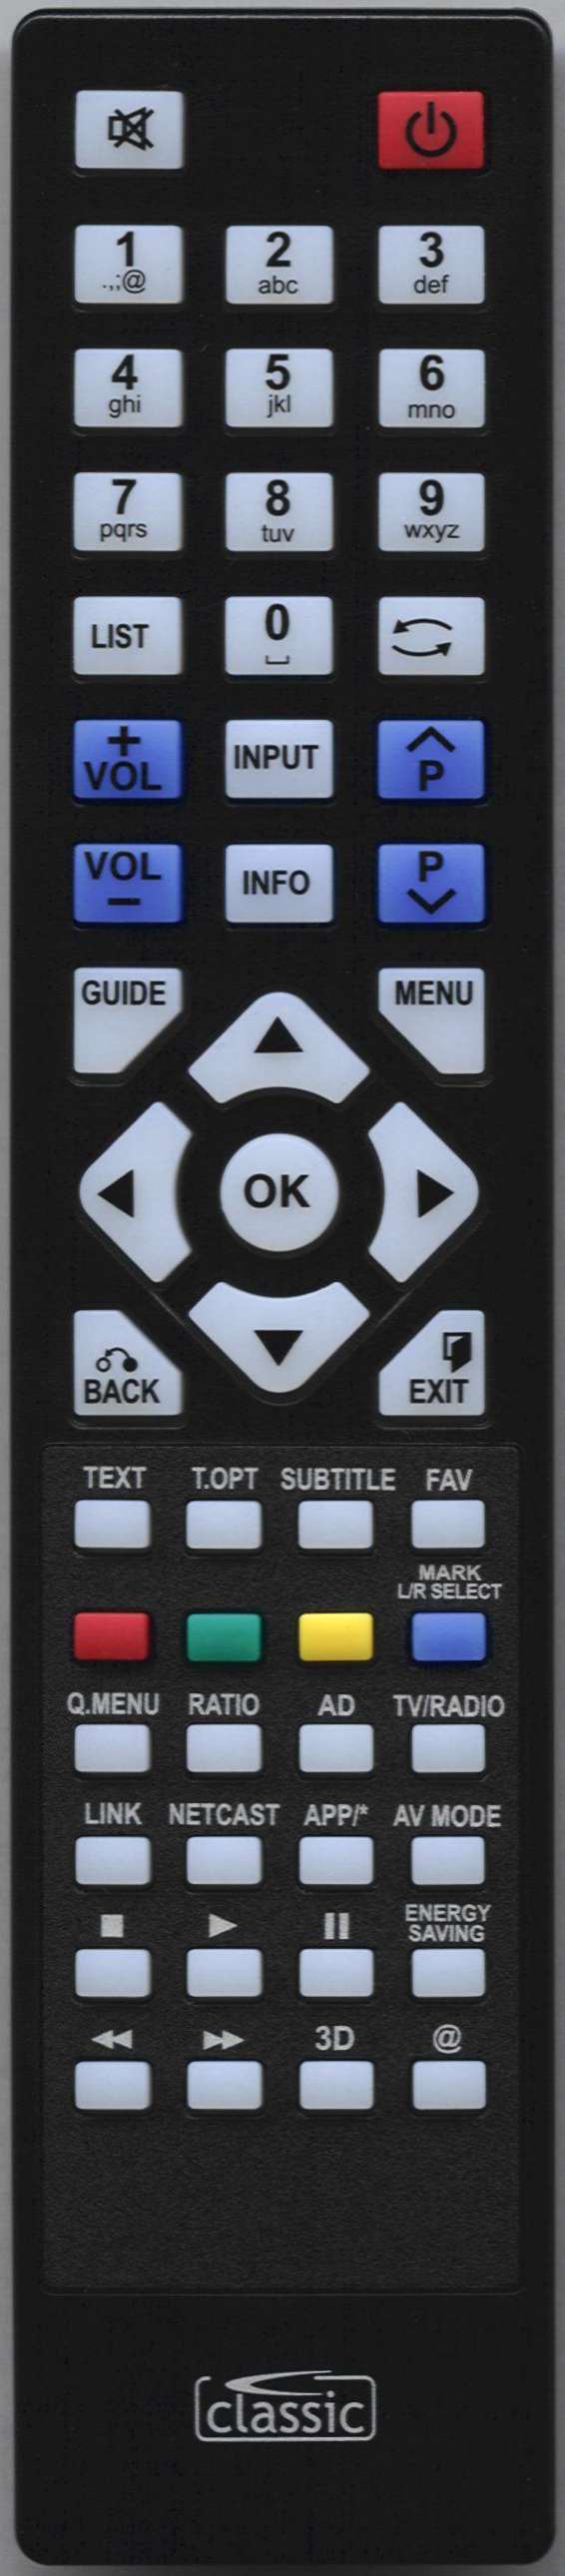 LG 19LE330N-ZA Remote Control